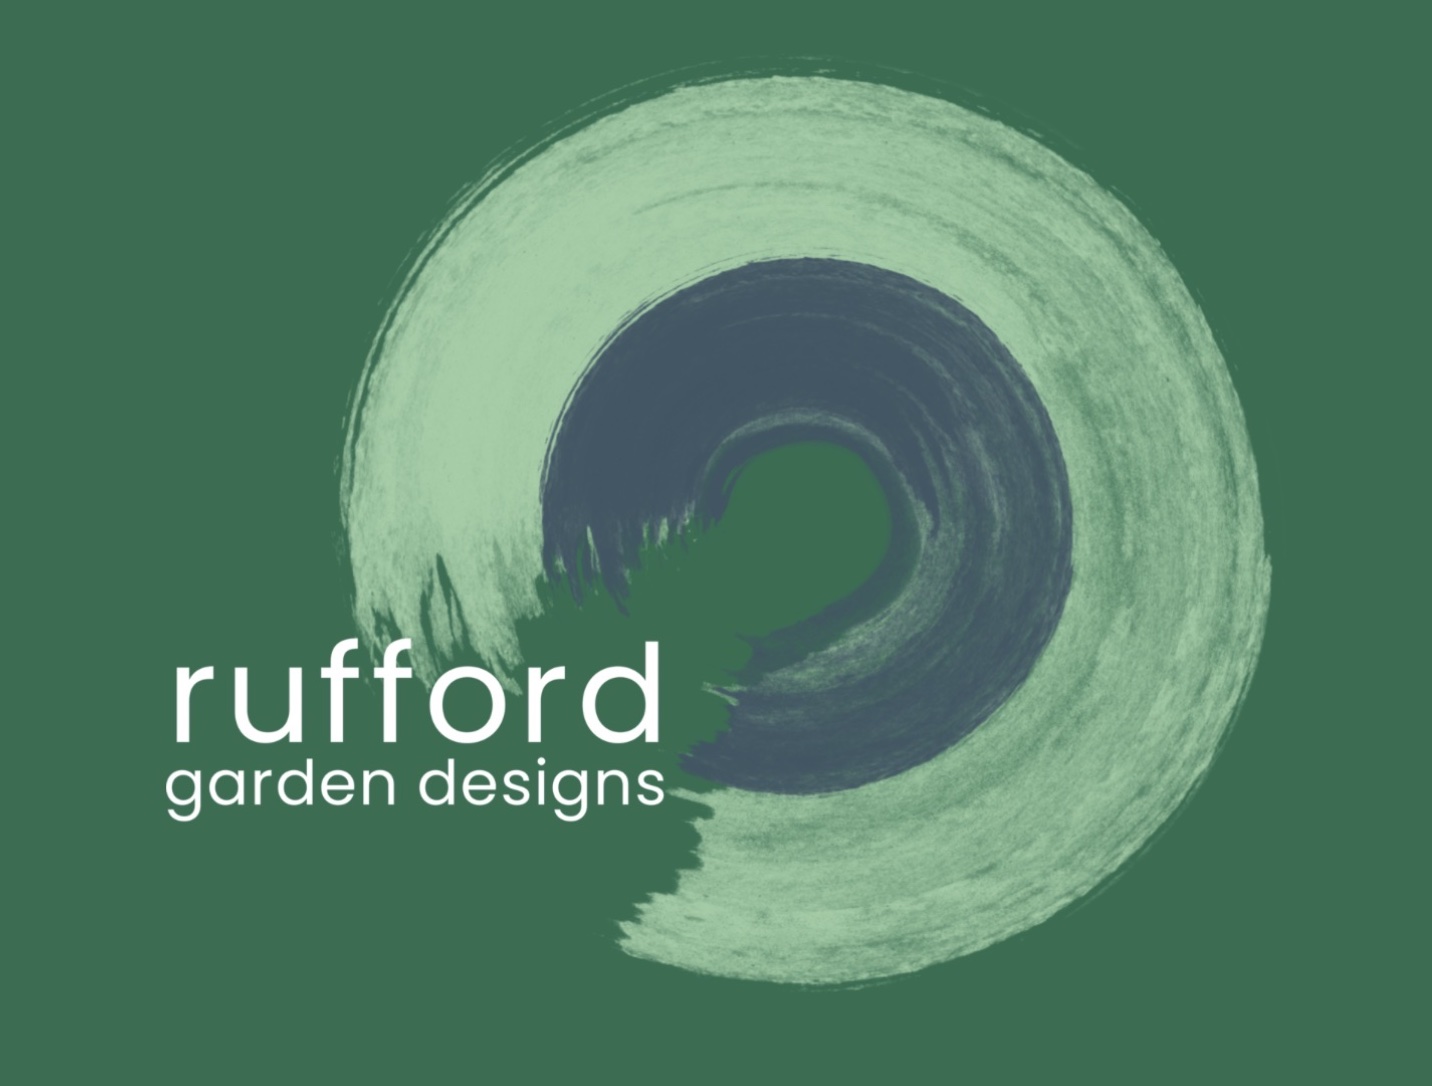 Rufford Garden Design working with railway sleepers. Railwaysleepers.com